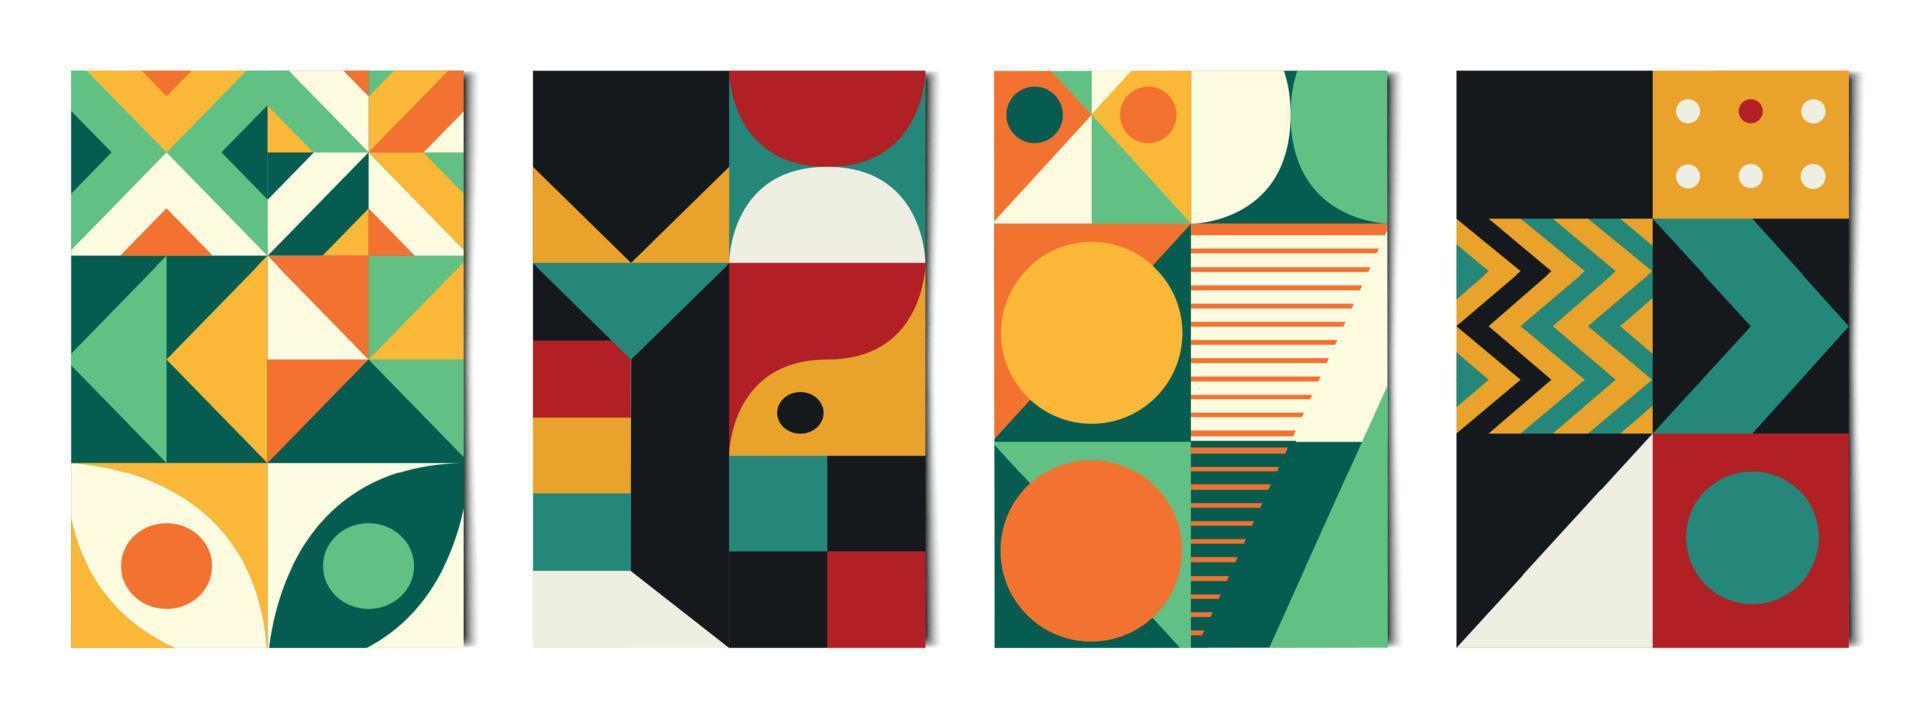 conjunto de 4 pcs formas geométricas abstratas fundos coloridos, modelos para publicidade, cartões de visita, texturas - vetor